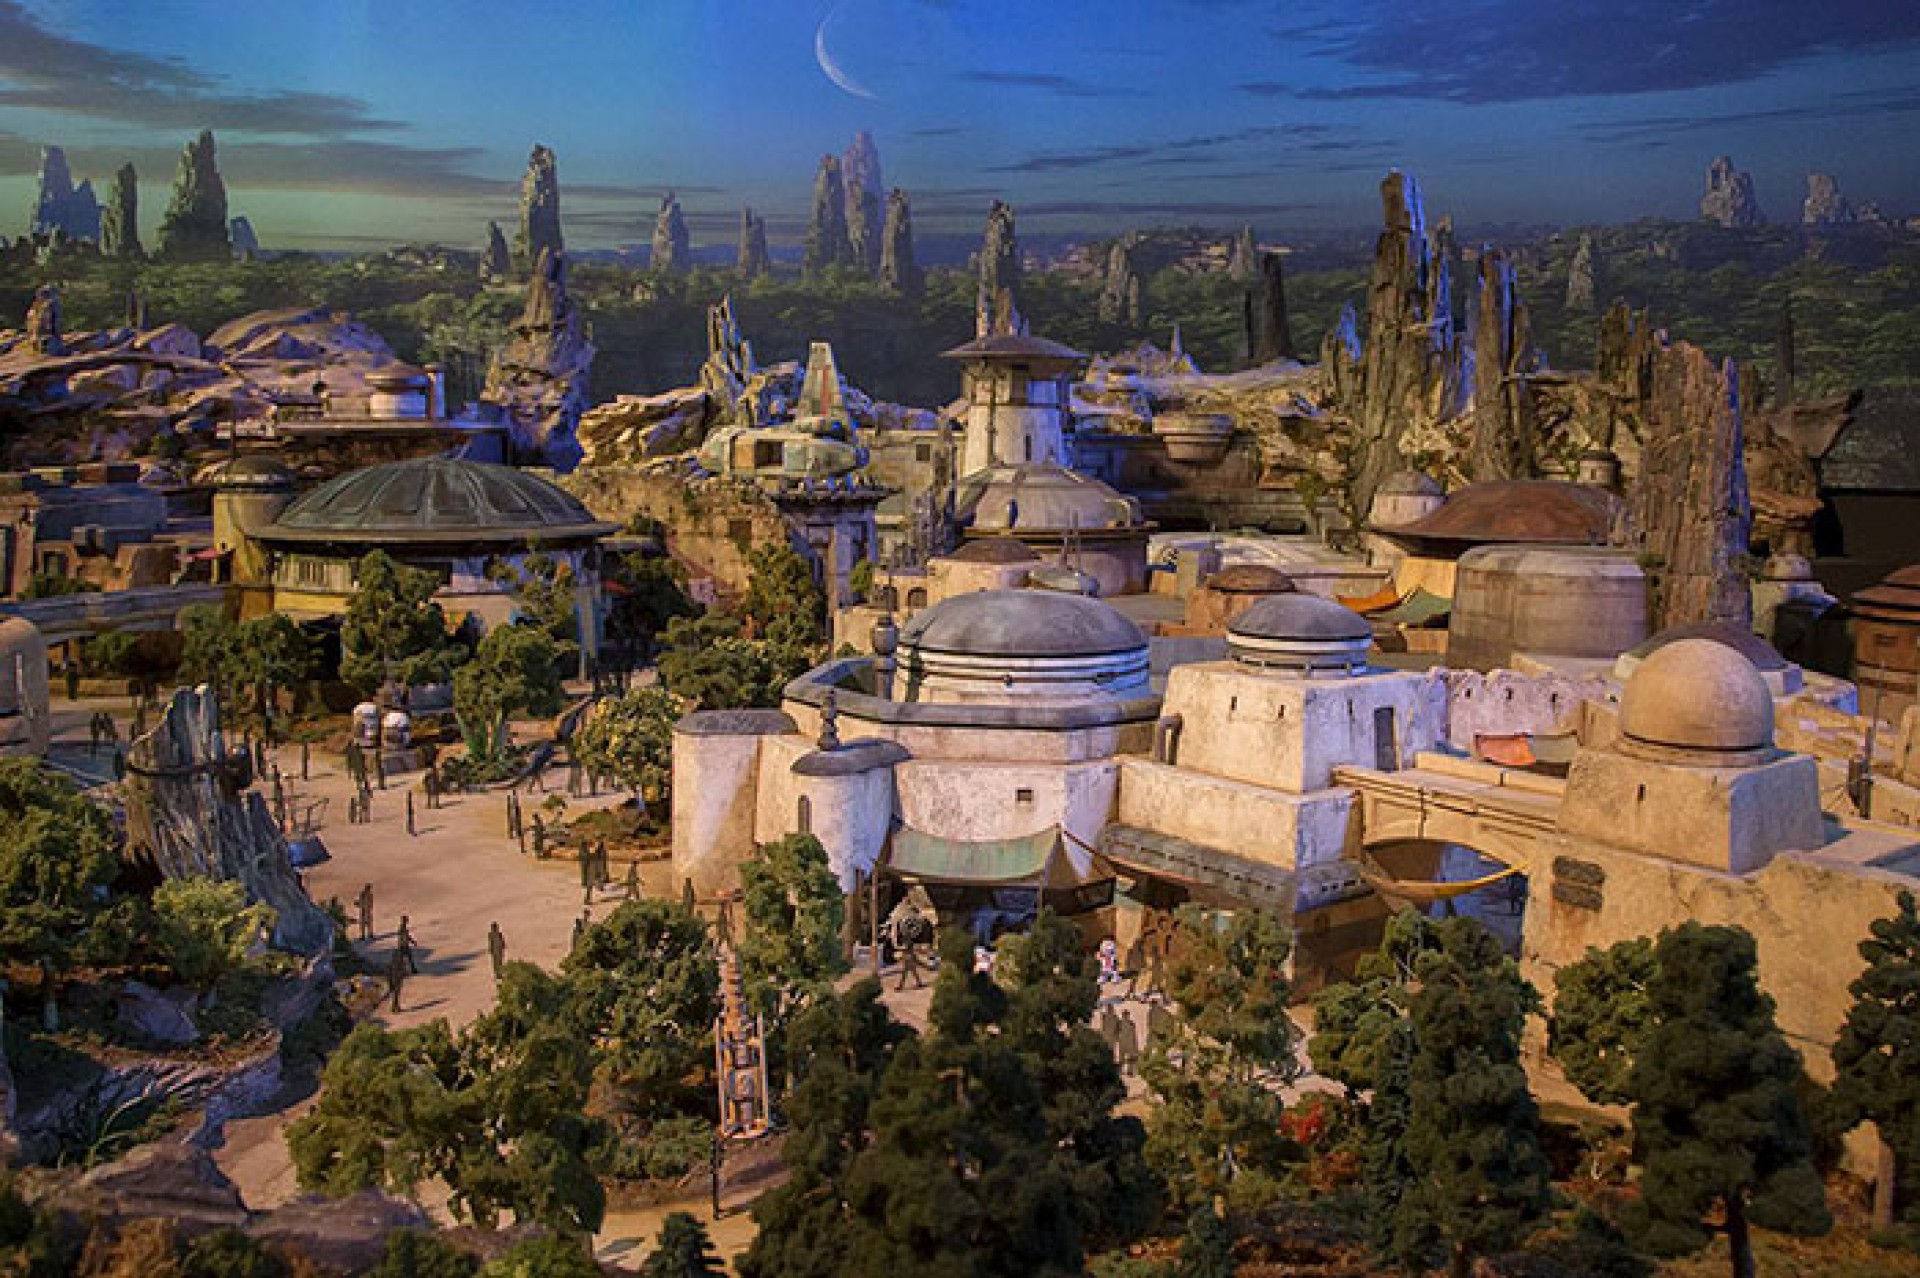 Videót tettek közzé a milliárd dolláros Star Wars parkról